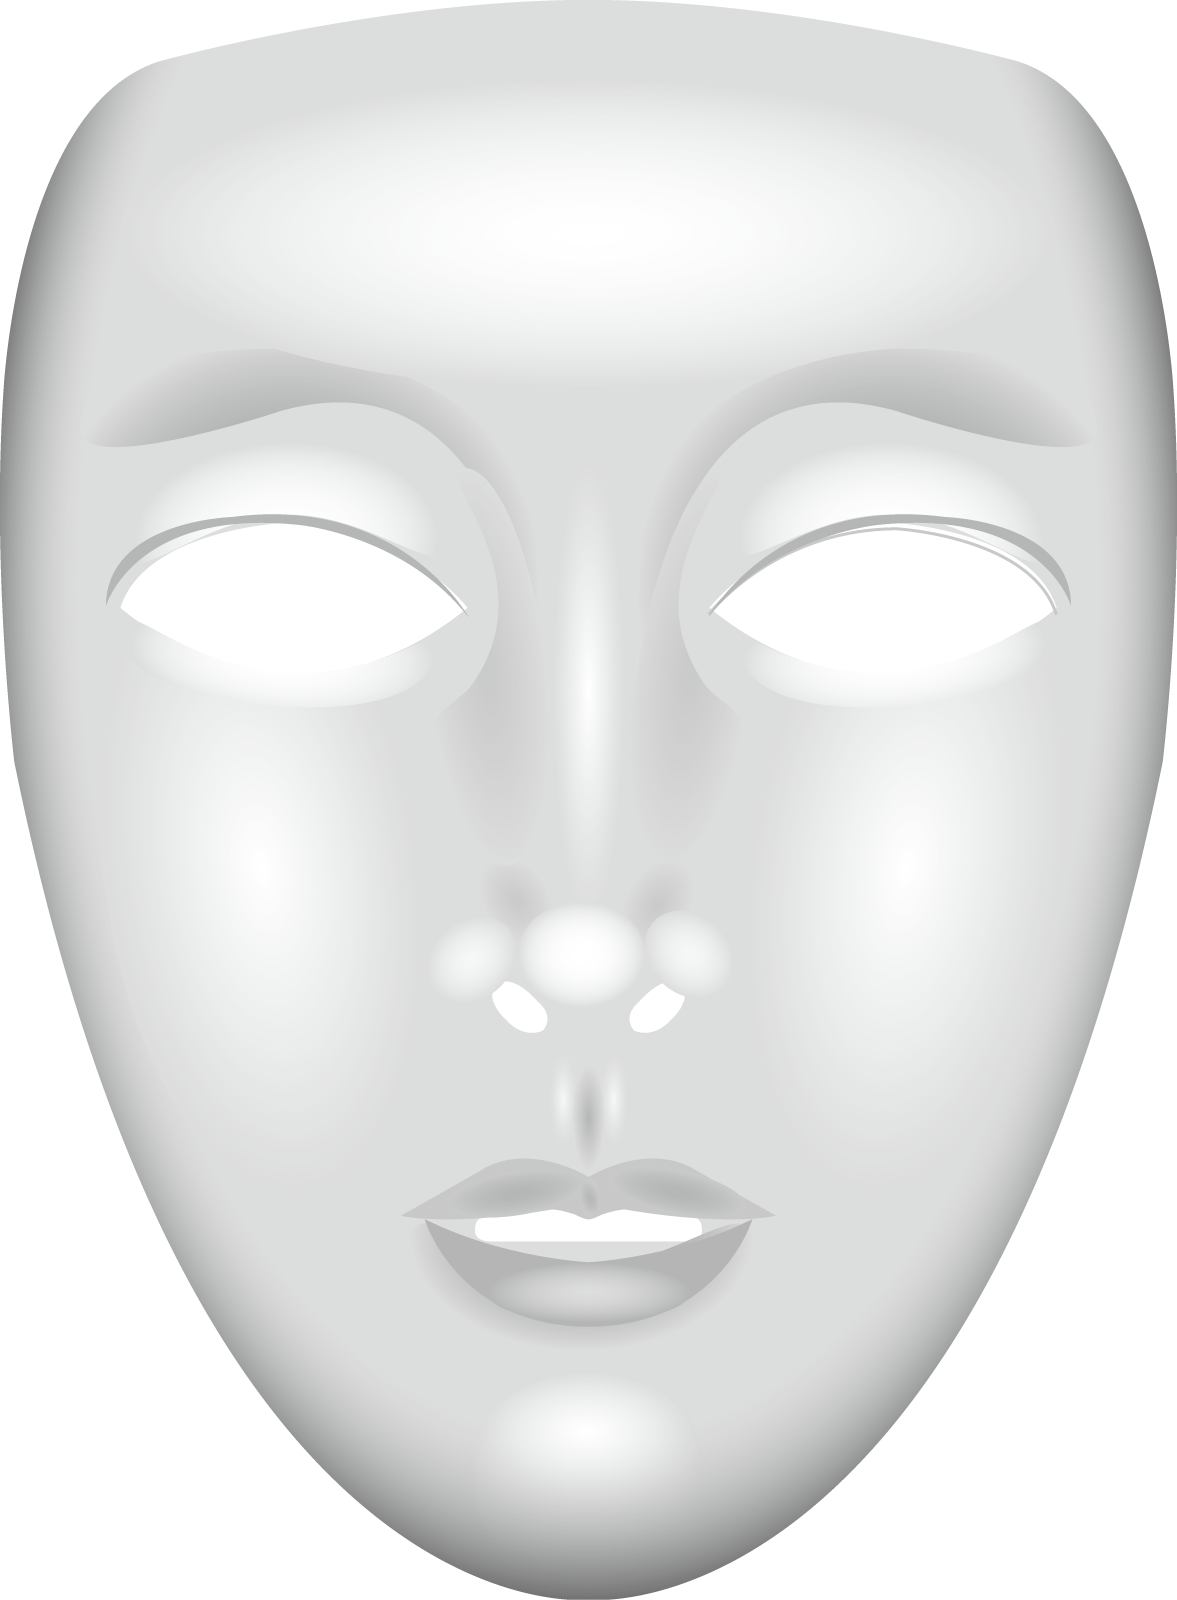 アイムホームでキムタクは何故仮面に見える 高次脳機能障害とは